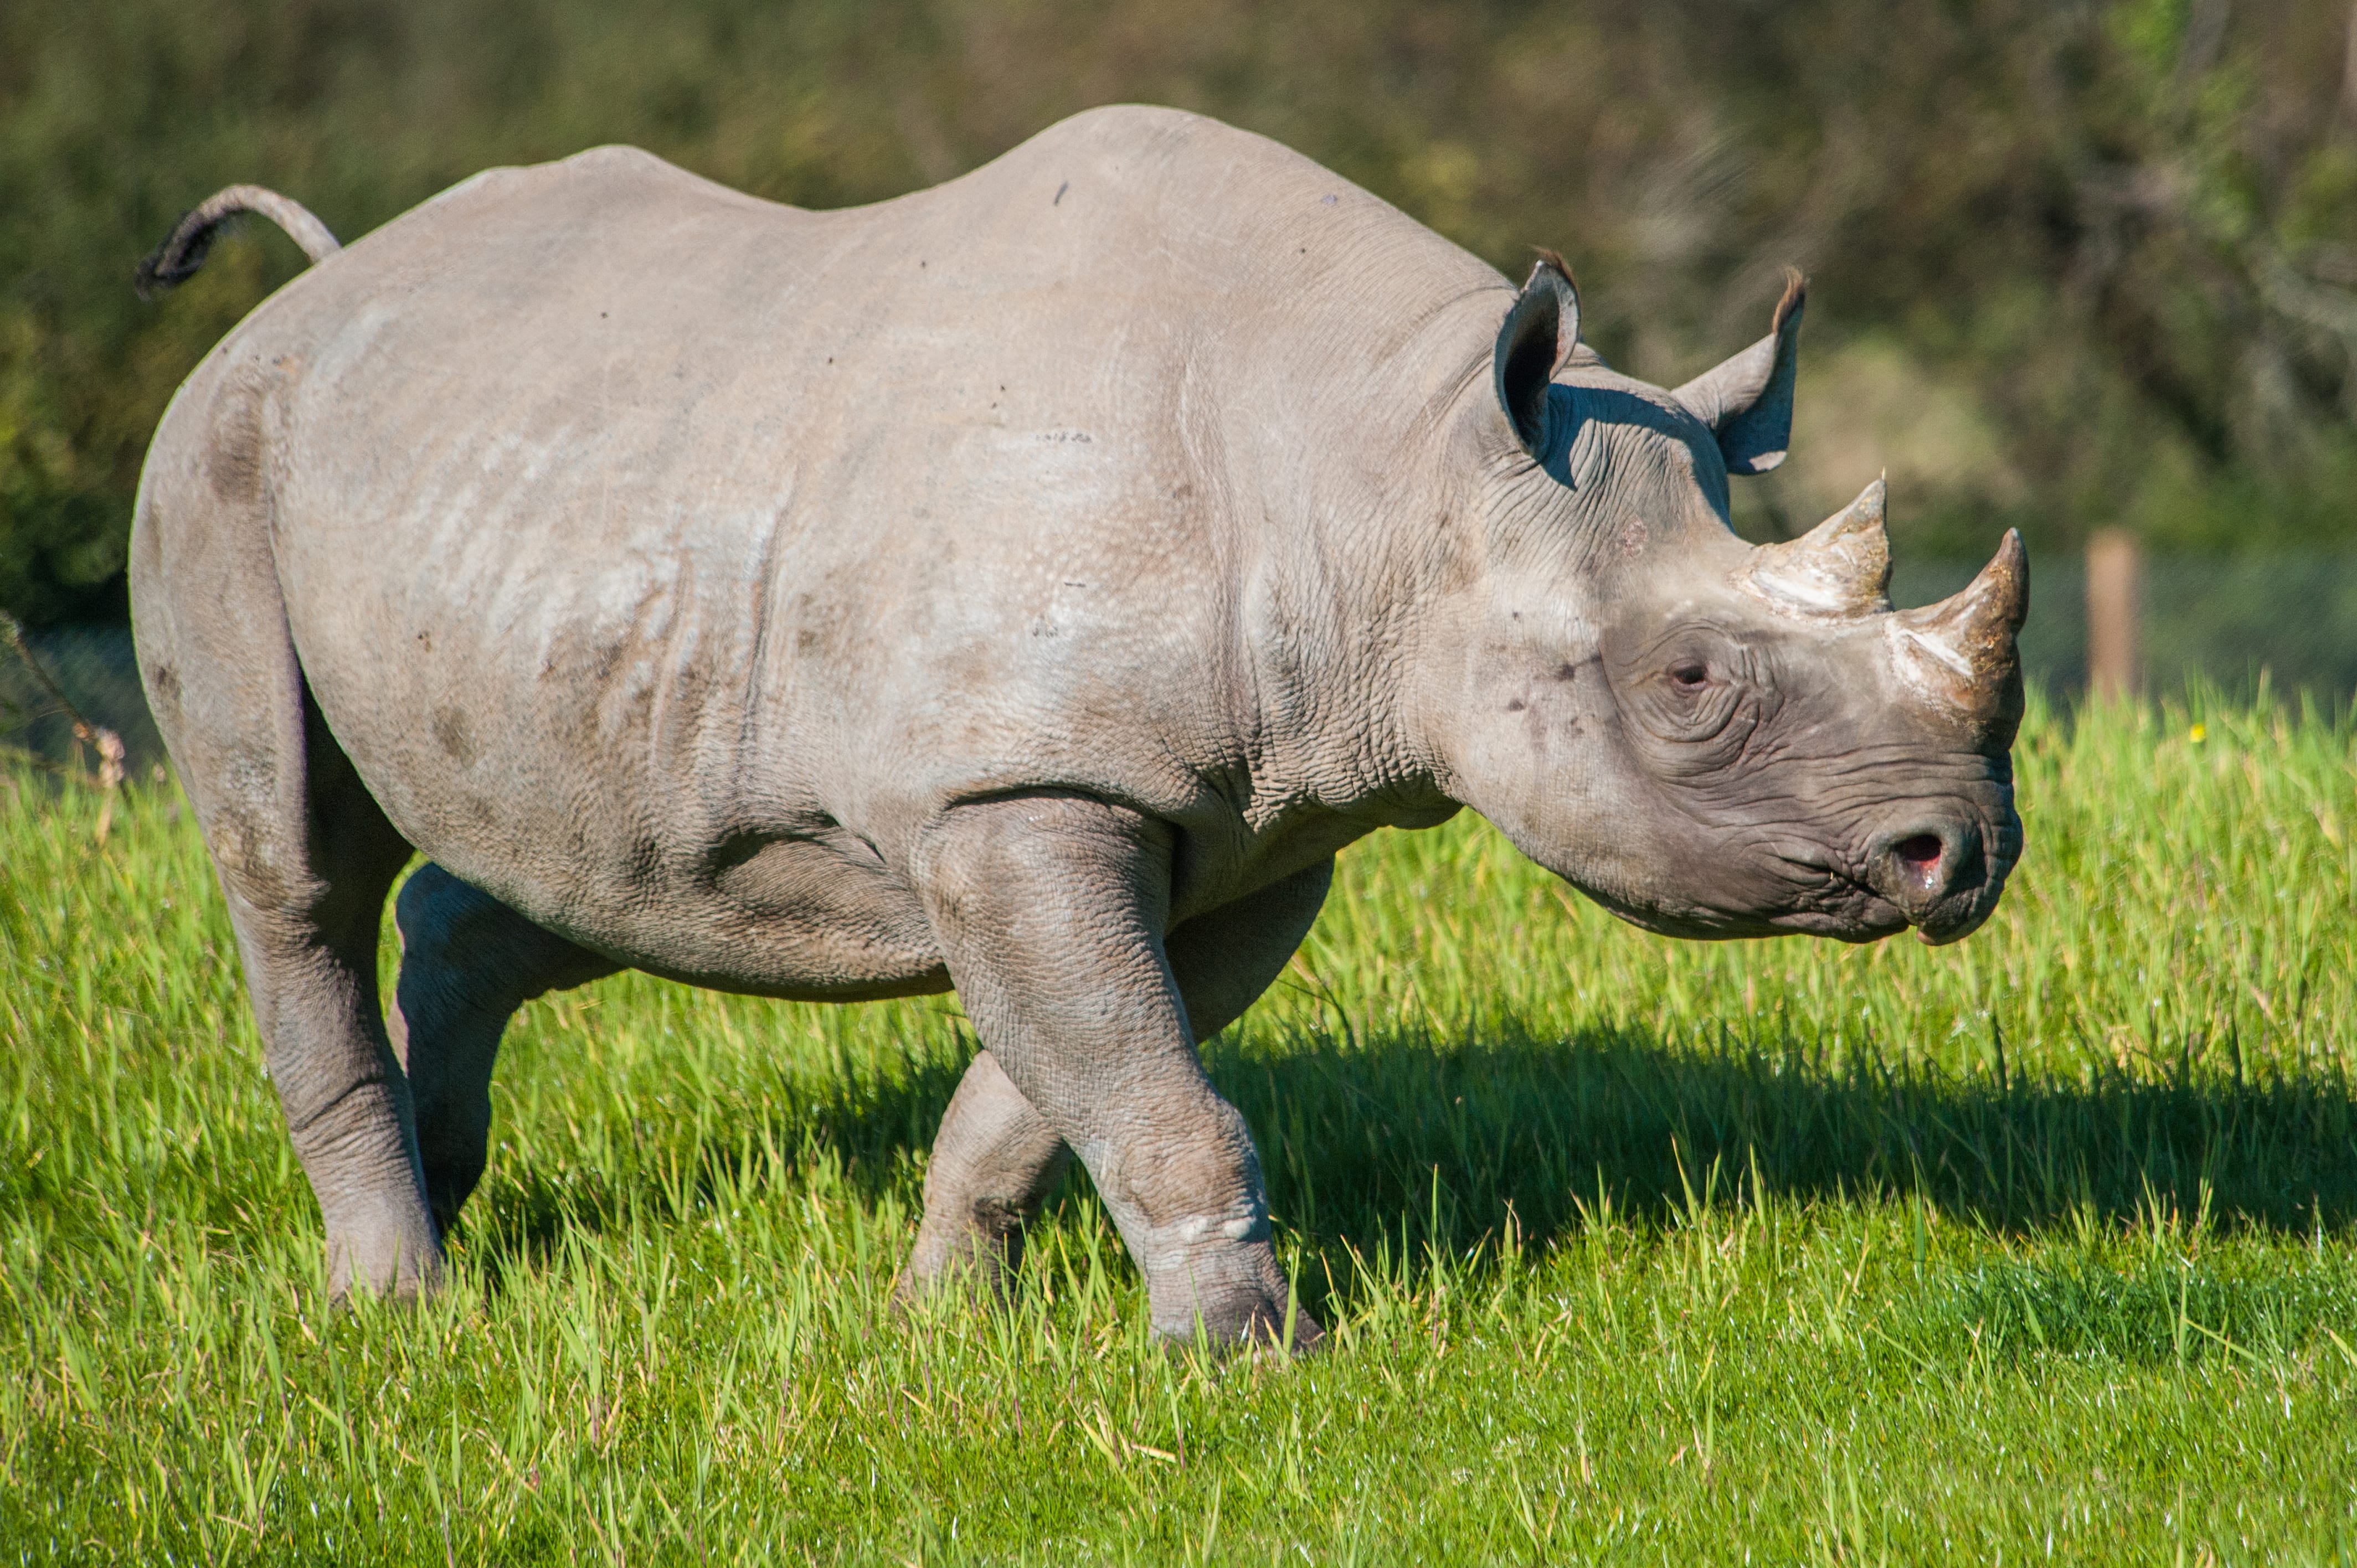 Manyara rhino outside